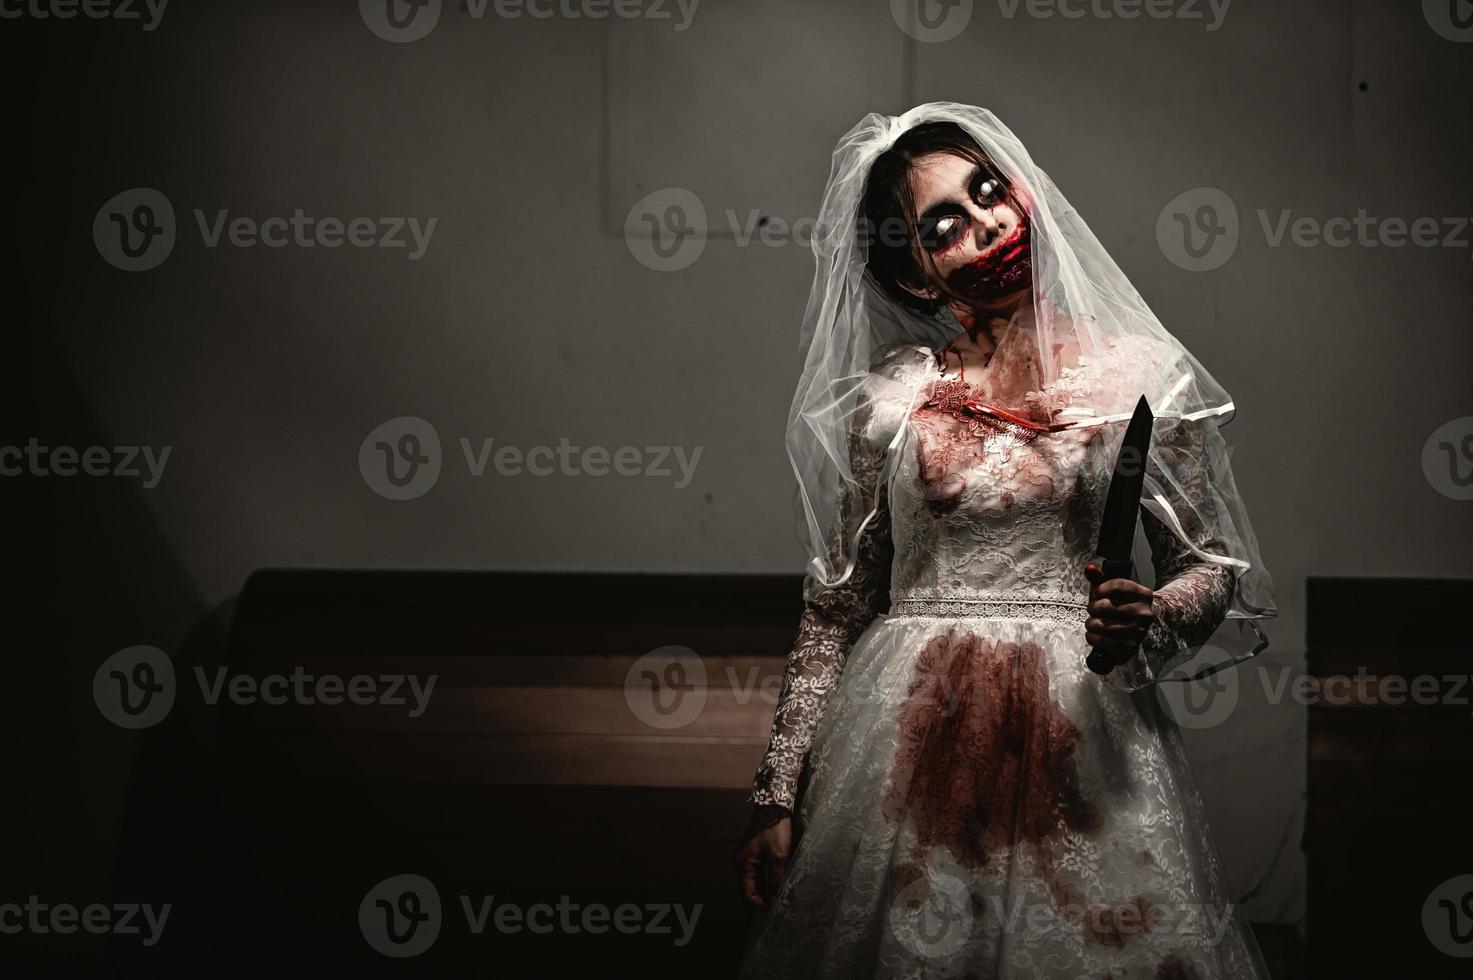 Halloween Festival notion, asiatique femme maquillage fantôme visage, mariée zombi personnage, horreur film fond d'écran ou affiche photo